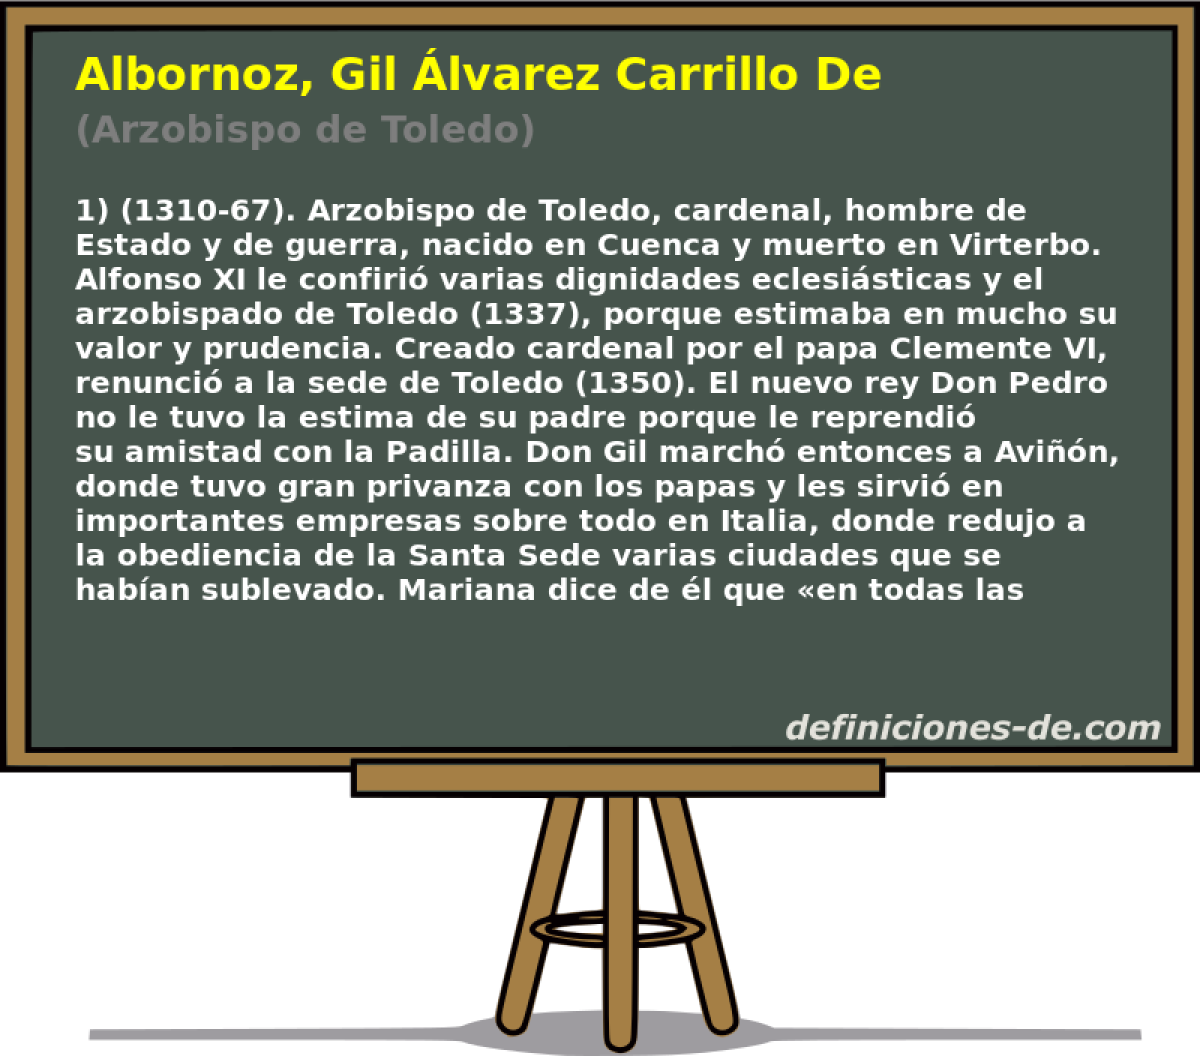 Albornoz, Gil lvarez Carrillo De (Arzobispo de Toledo)